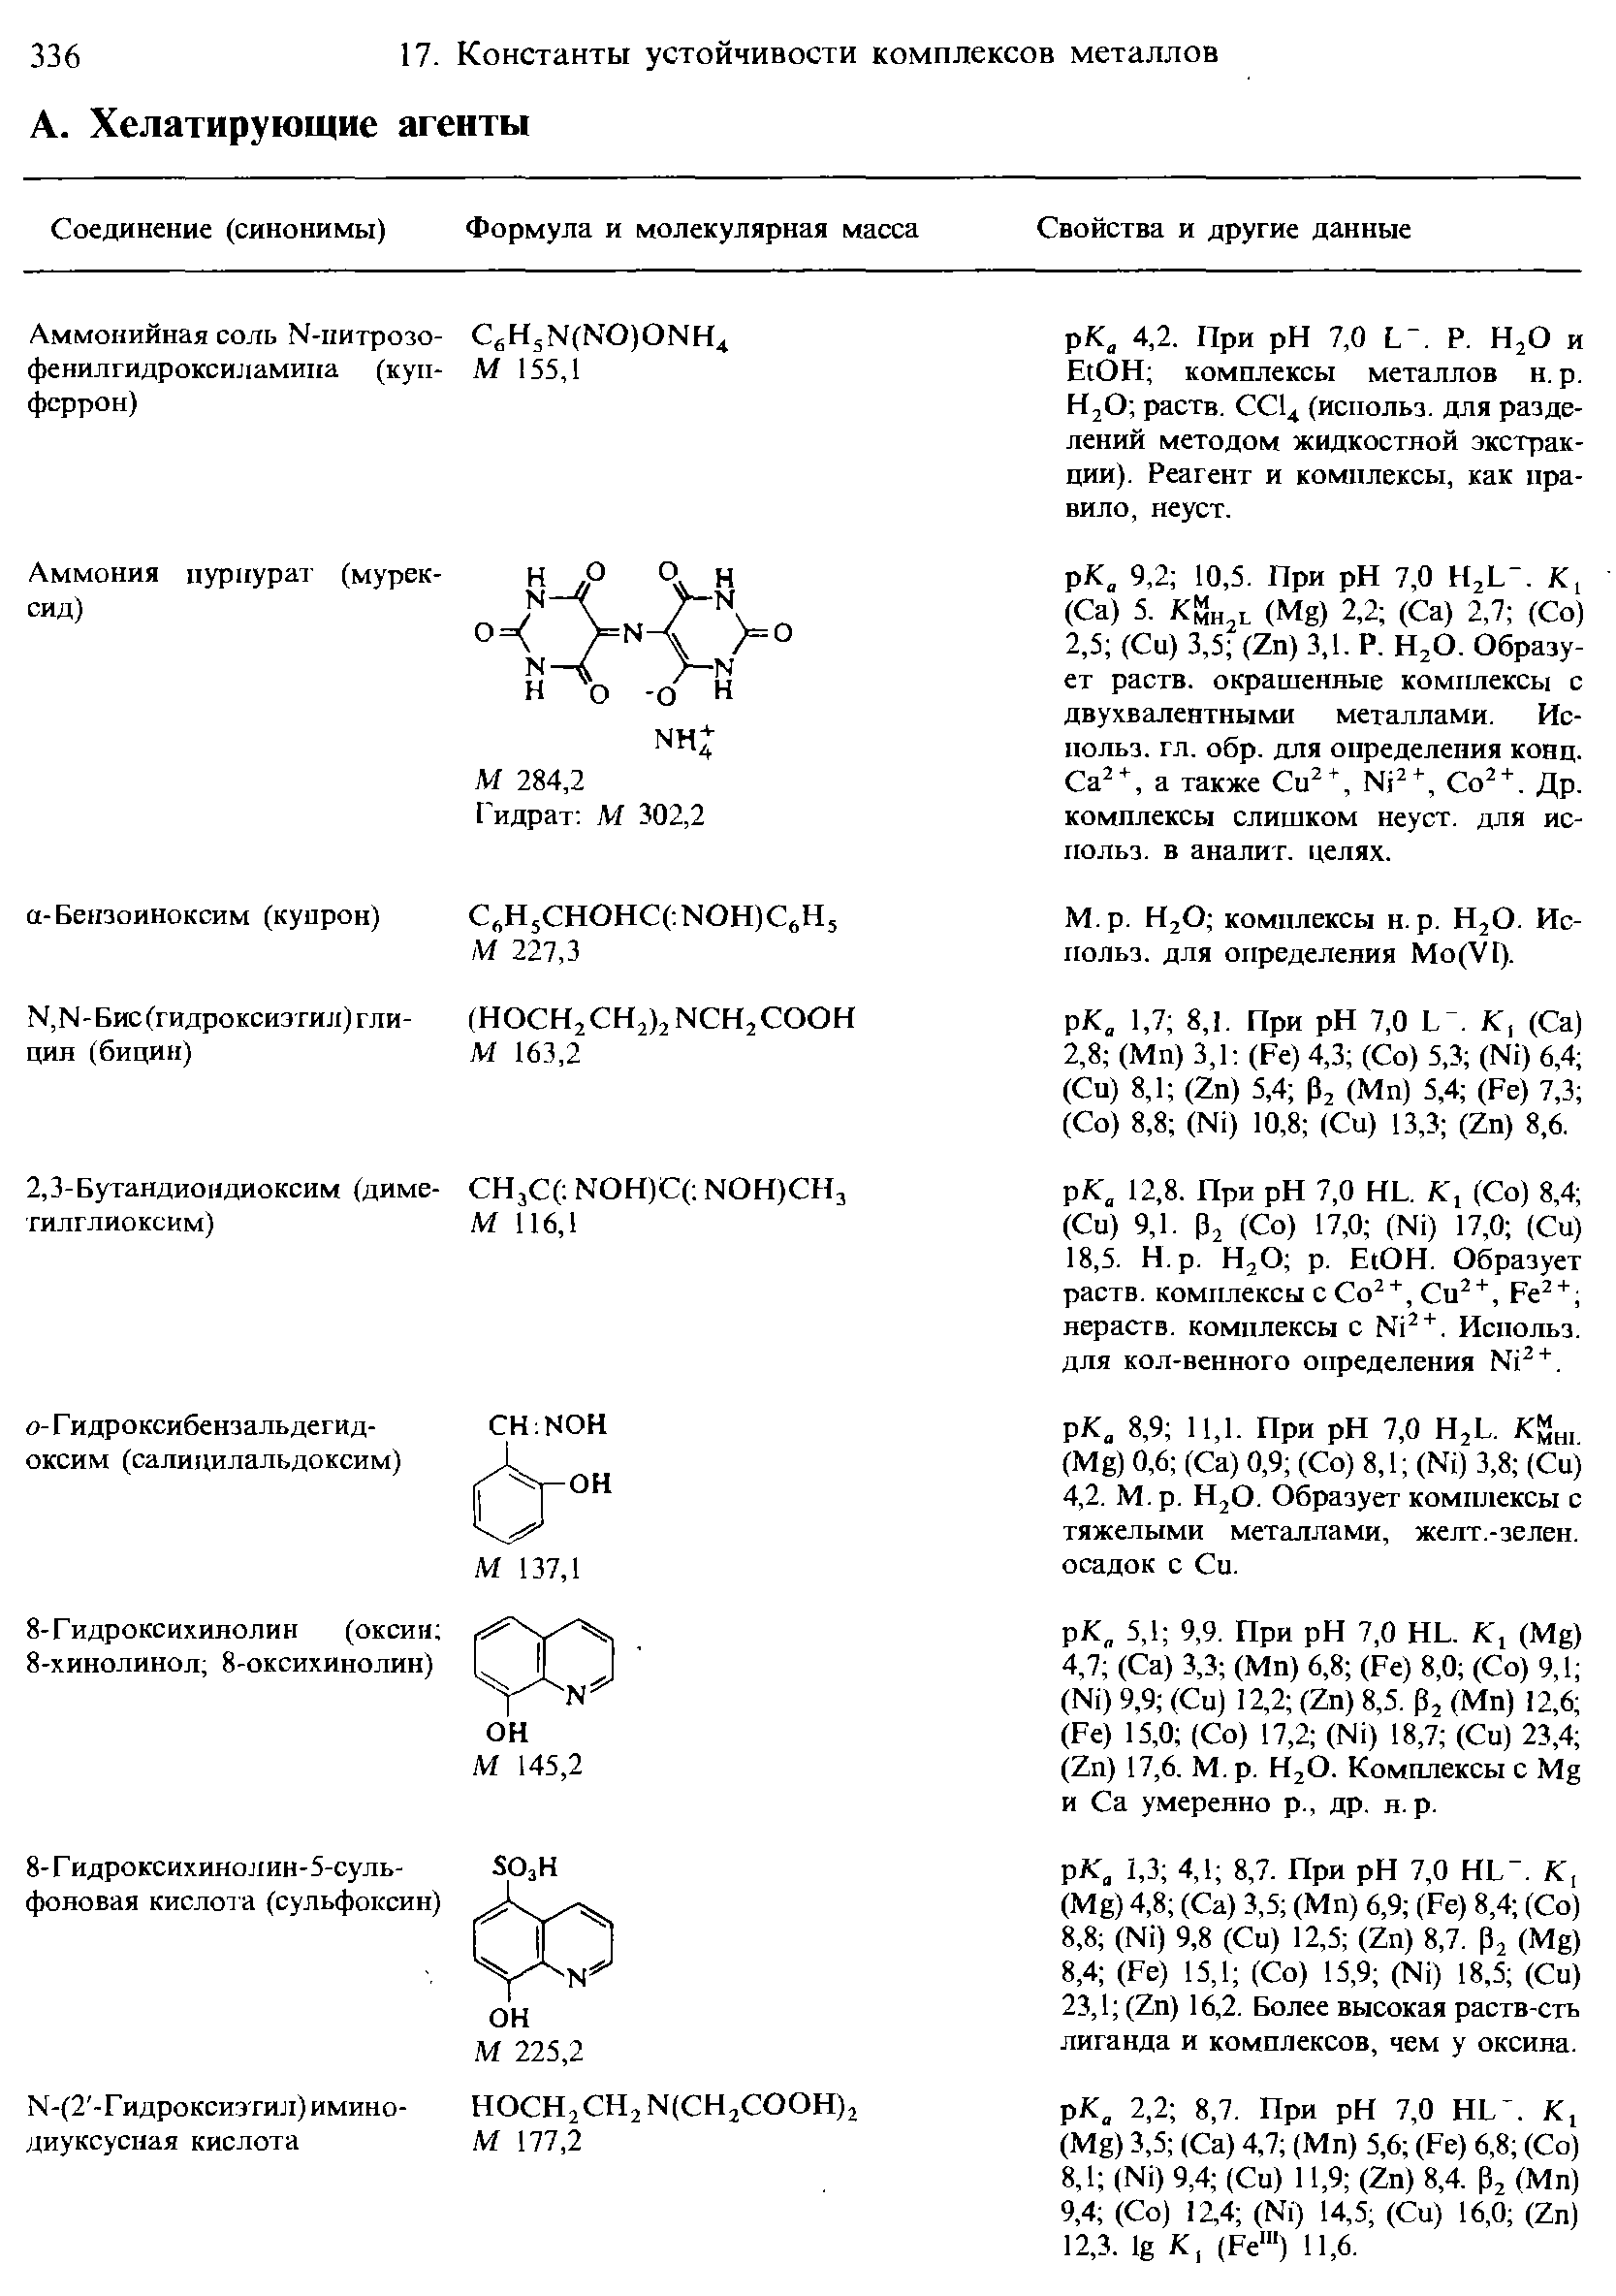 Н2О комплексы н.р. Н2О. Использ. для определения Мо(У1).